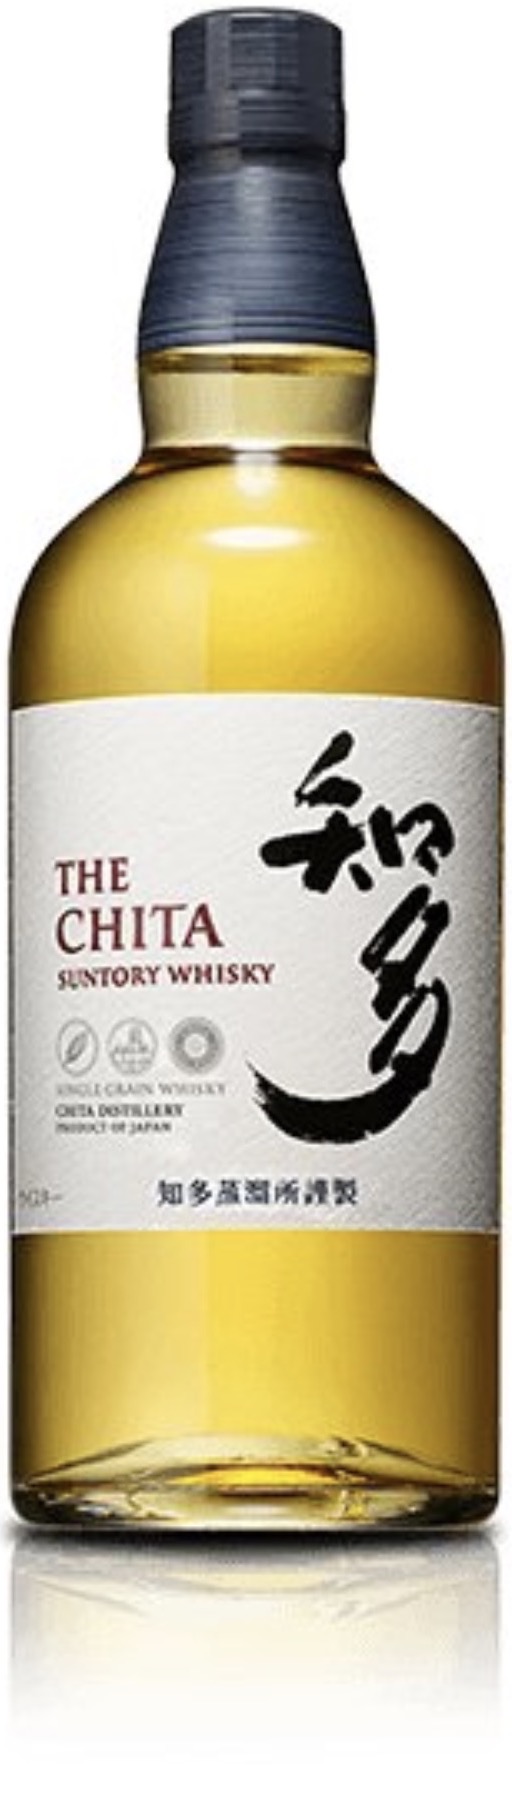 Suntory Whisky The Chita Single Grain in GP 43 % vol. 0,7L